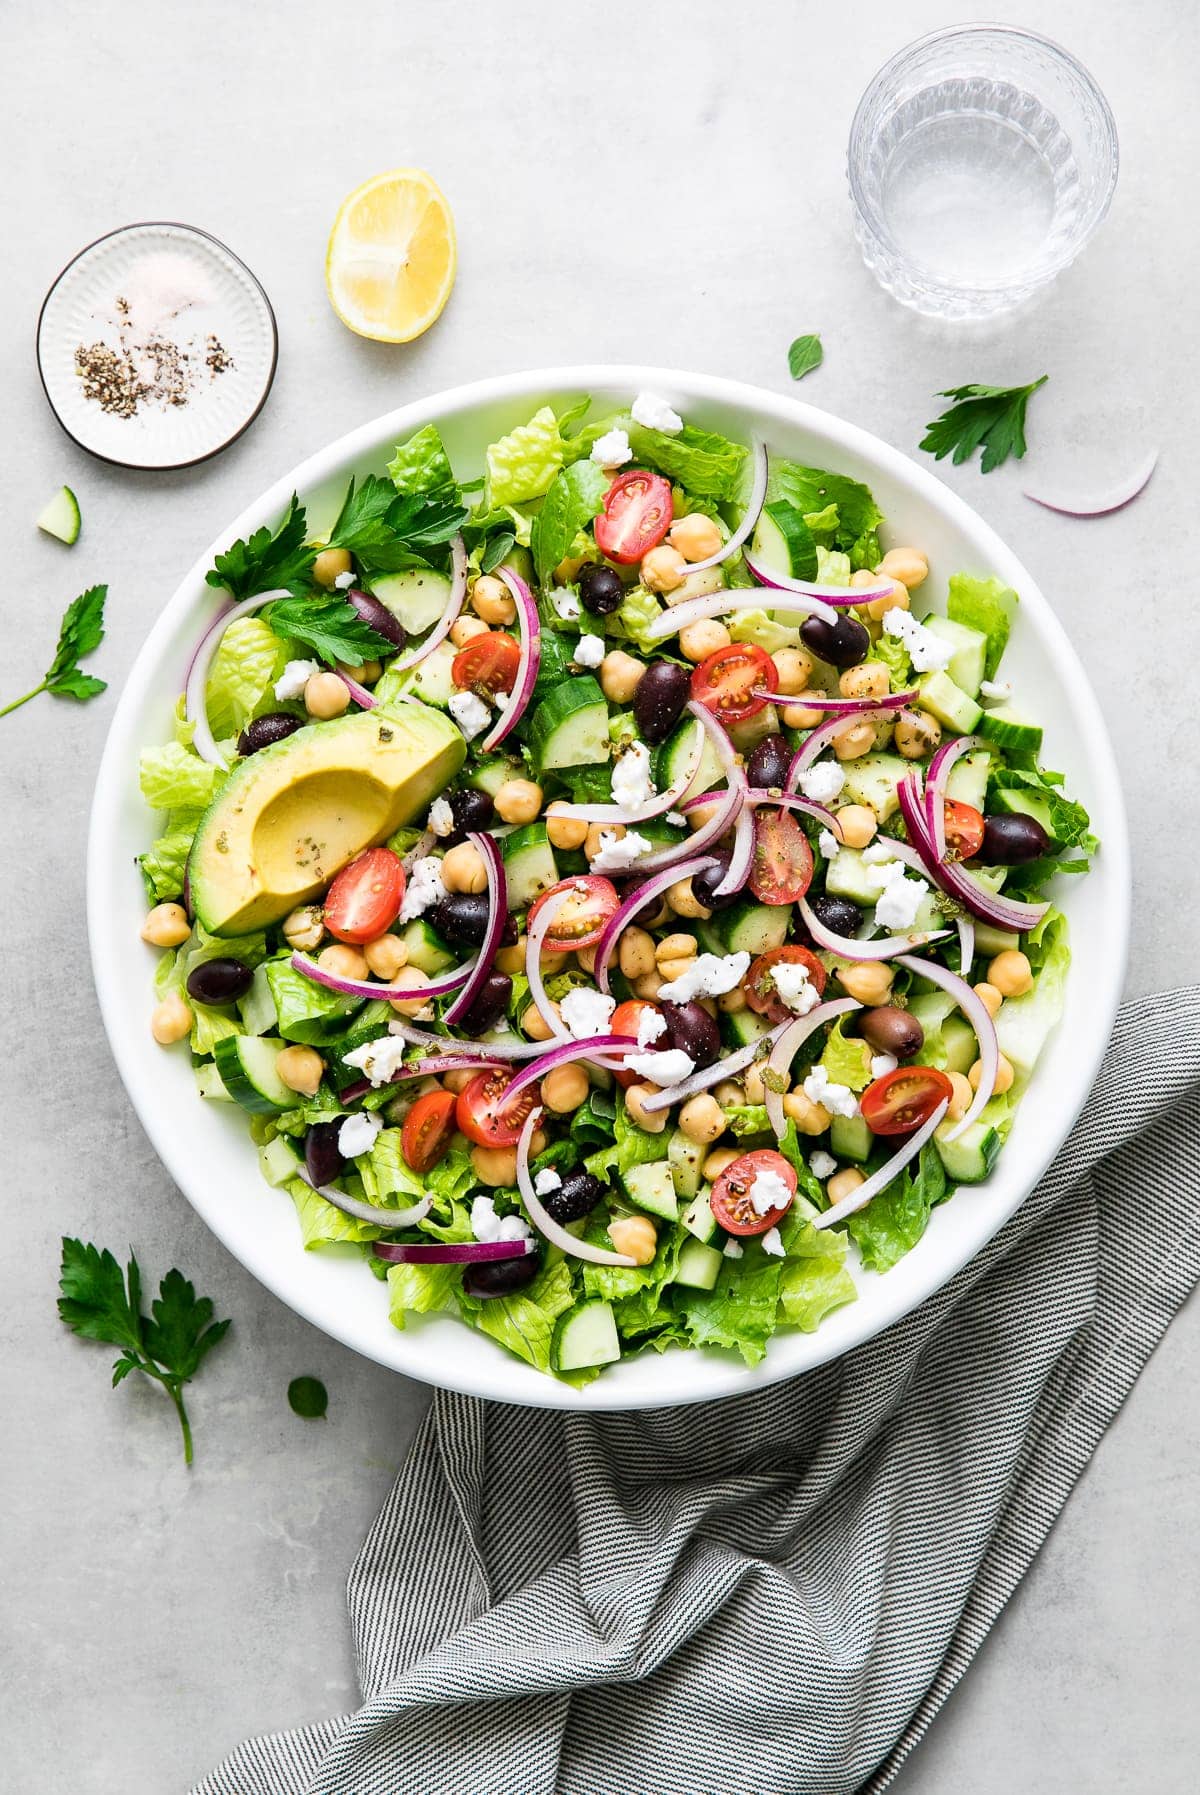 https://simple-veganista.com/wp-content/uploads/2020/09/mediterranean-salad-recipe.jpg